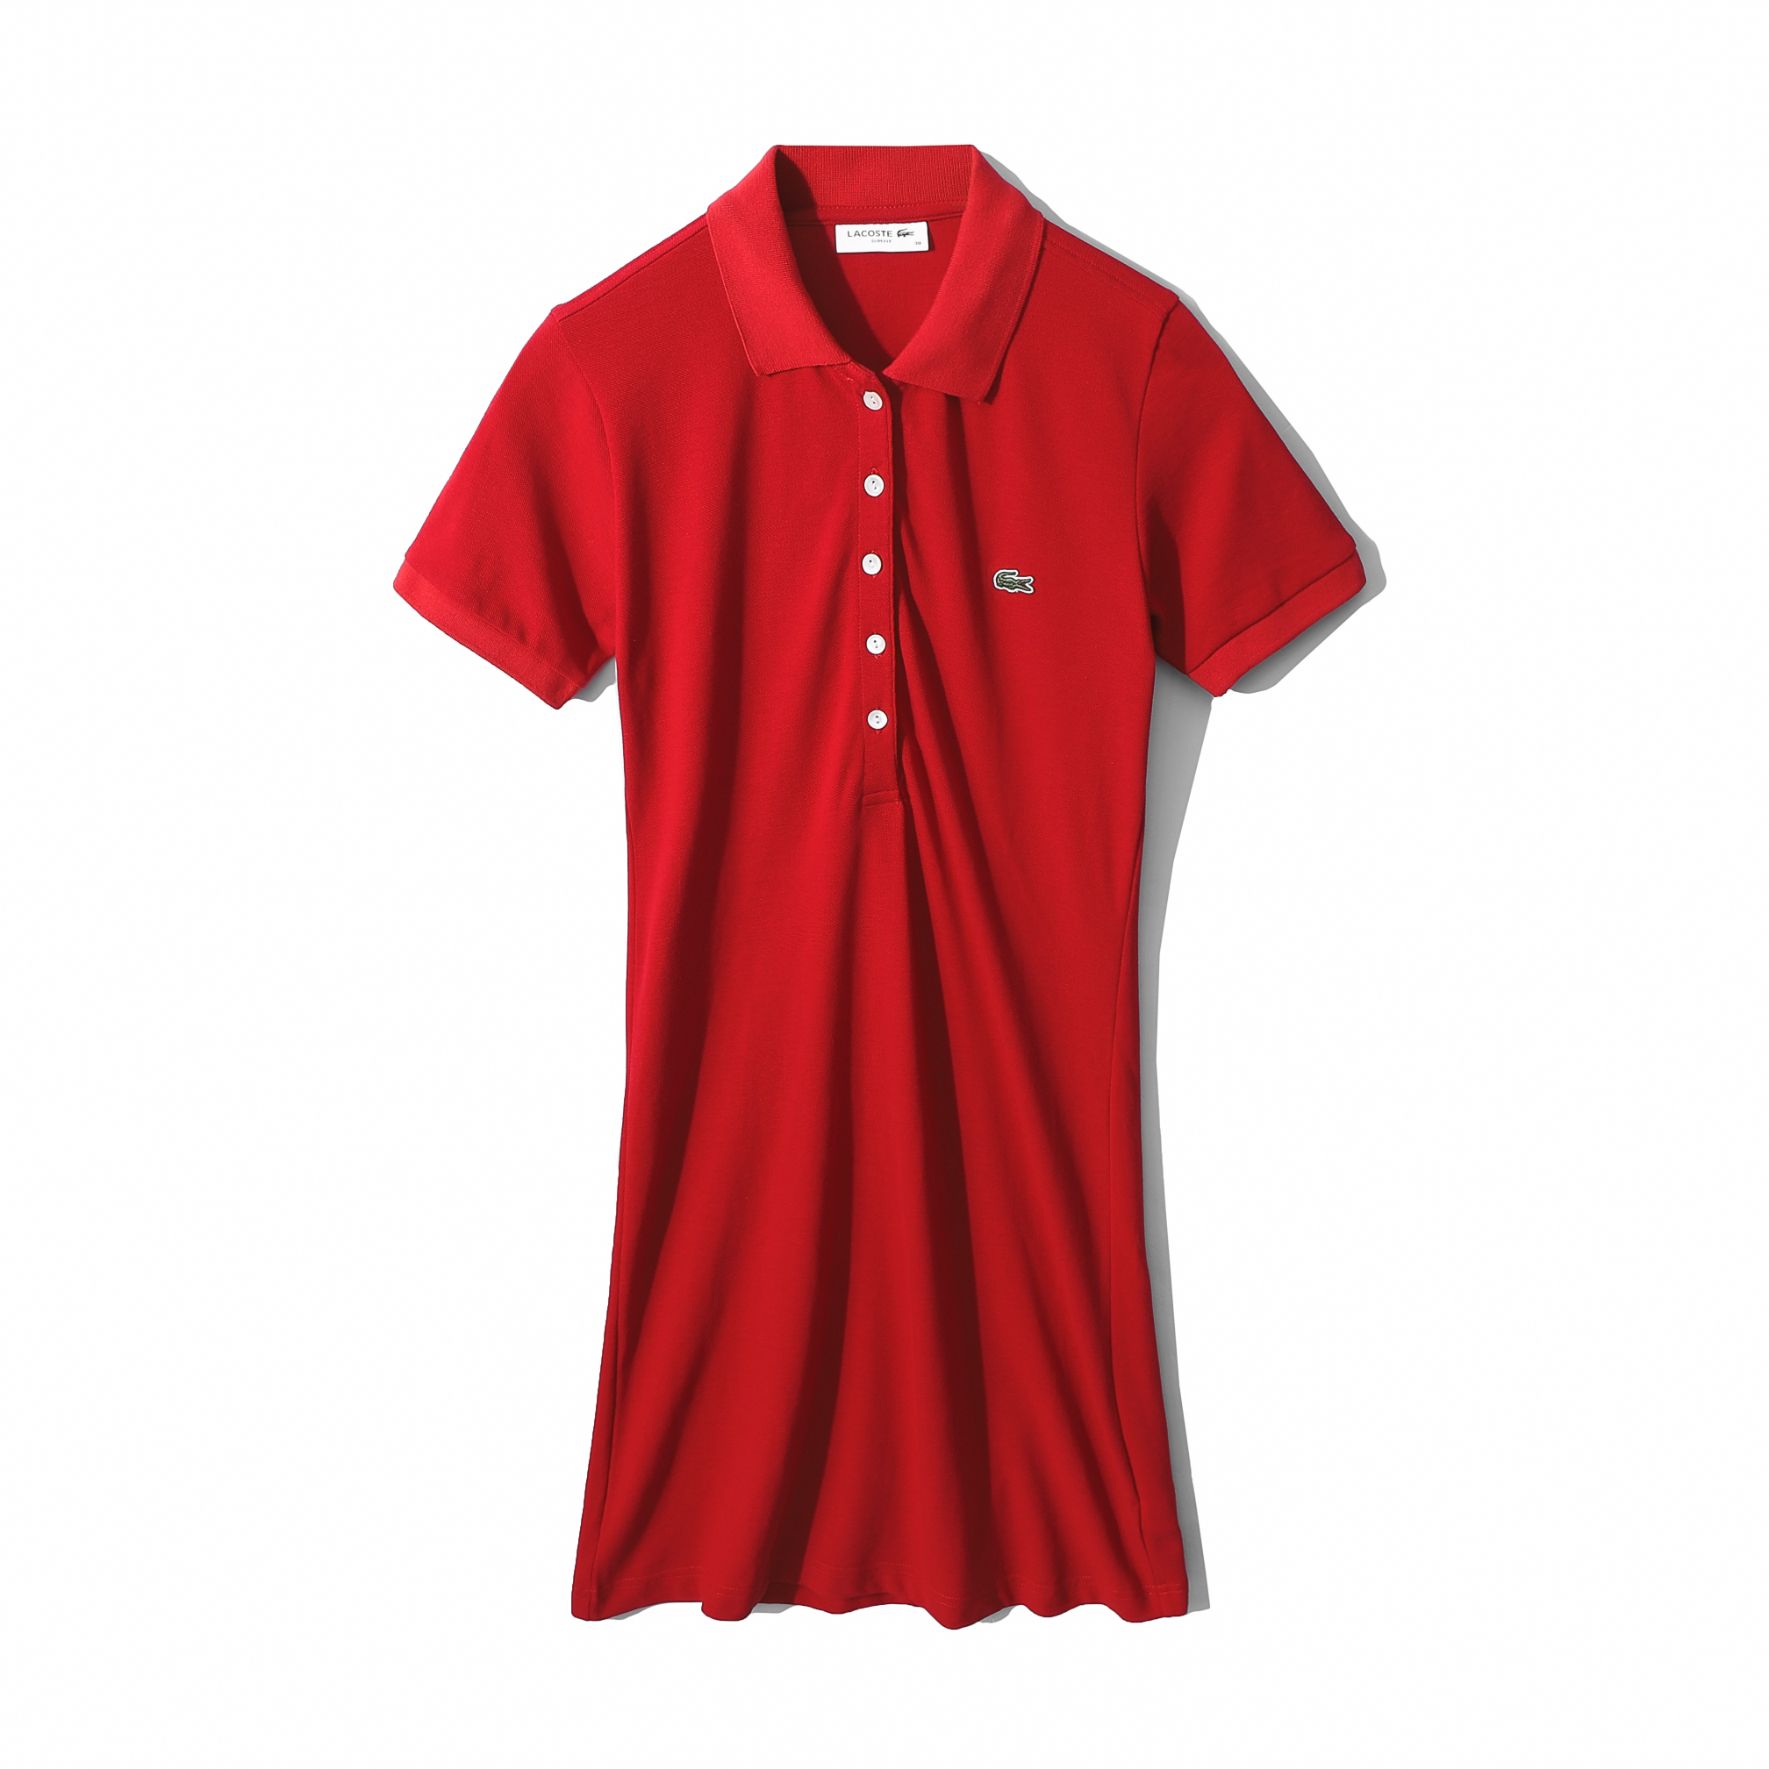 Đầm đỏ chất tuyết mưa tay con phối voan - Bán sỉ thời trang mỹ phẩm